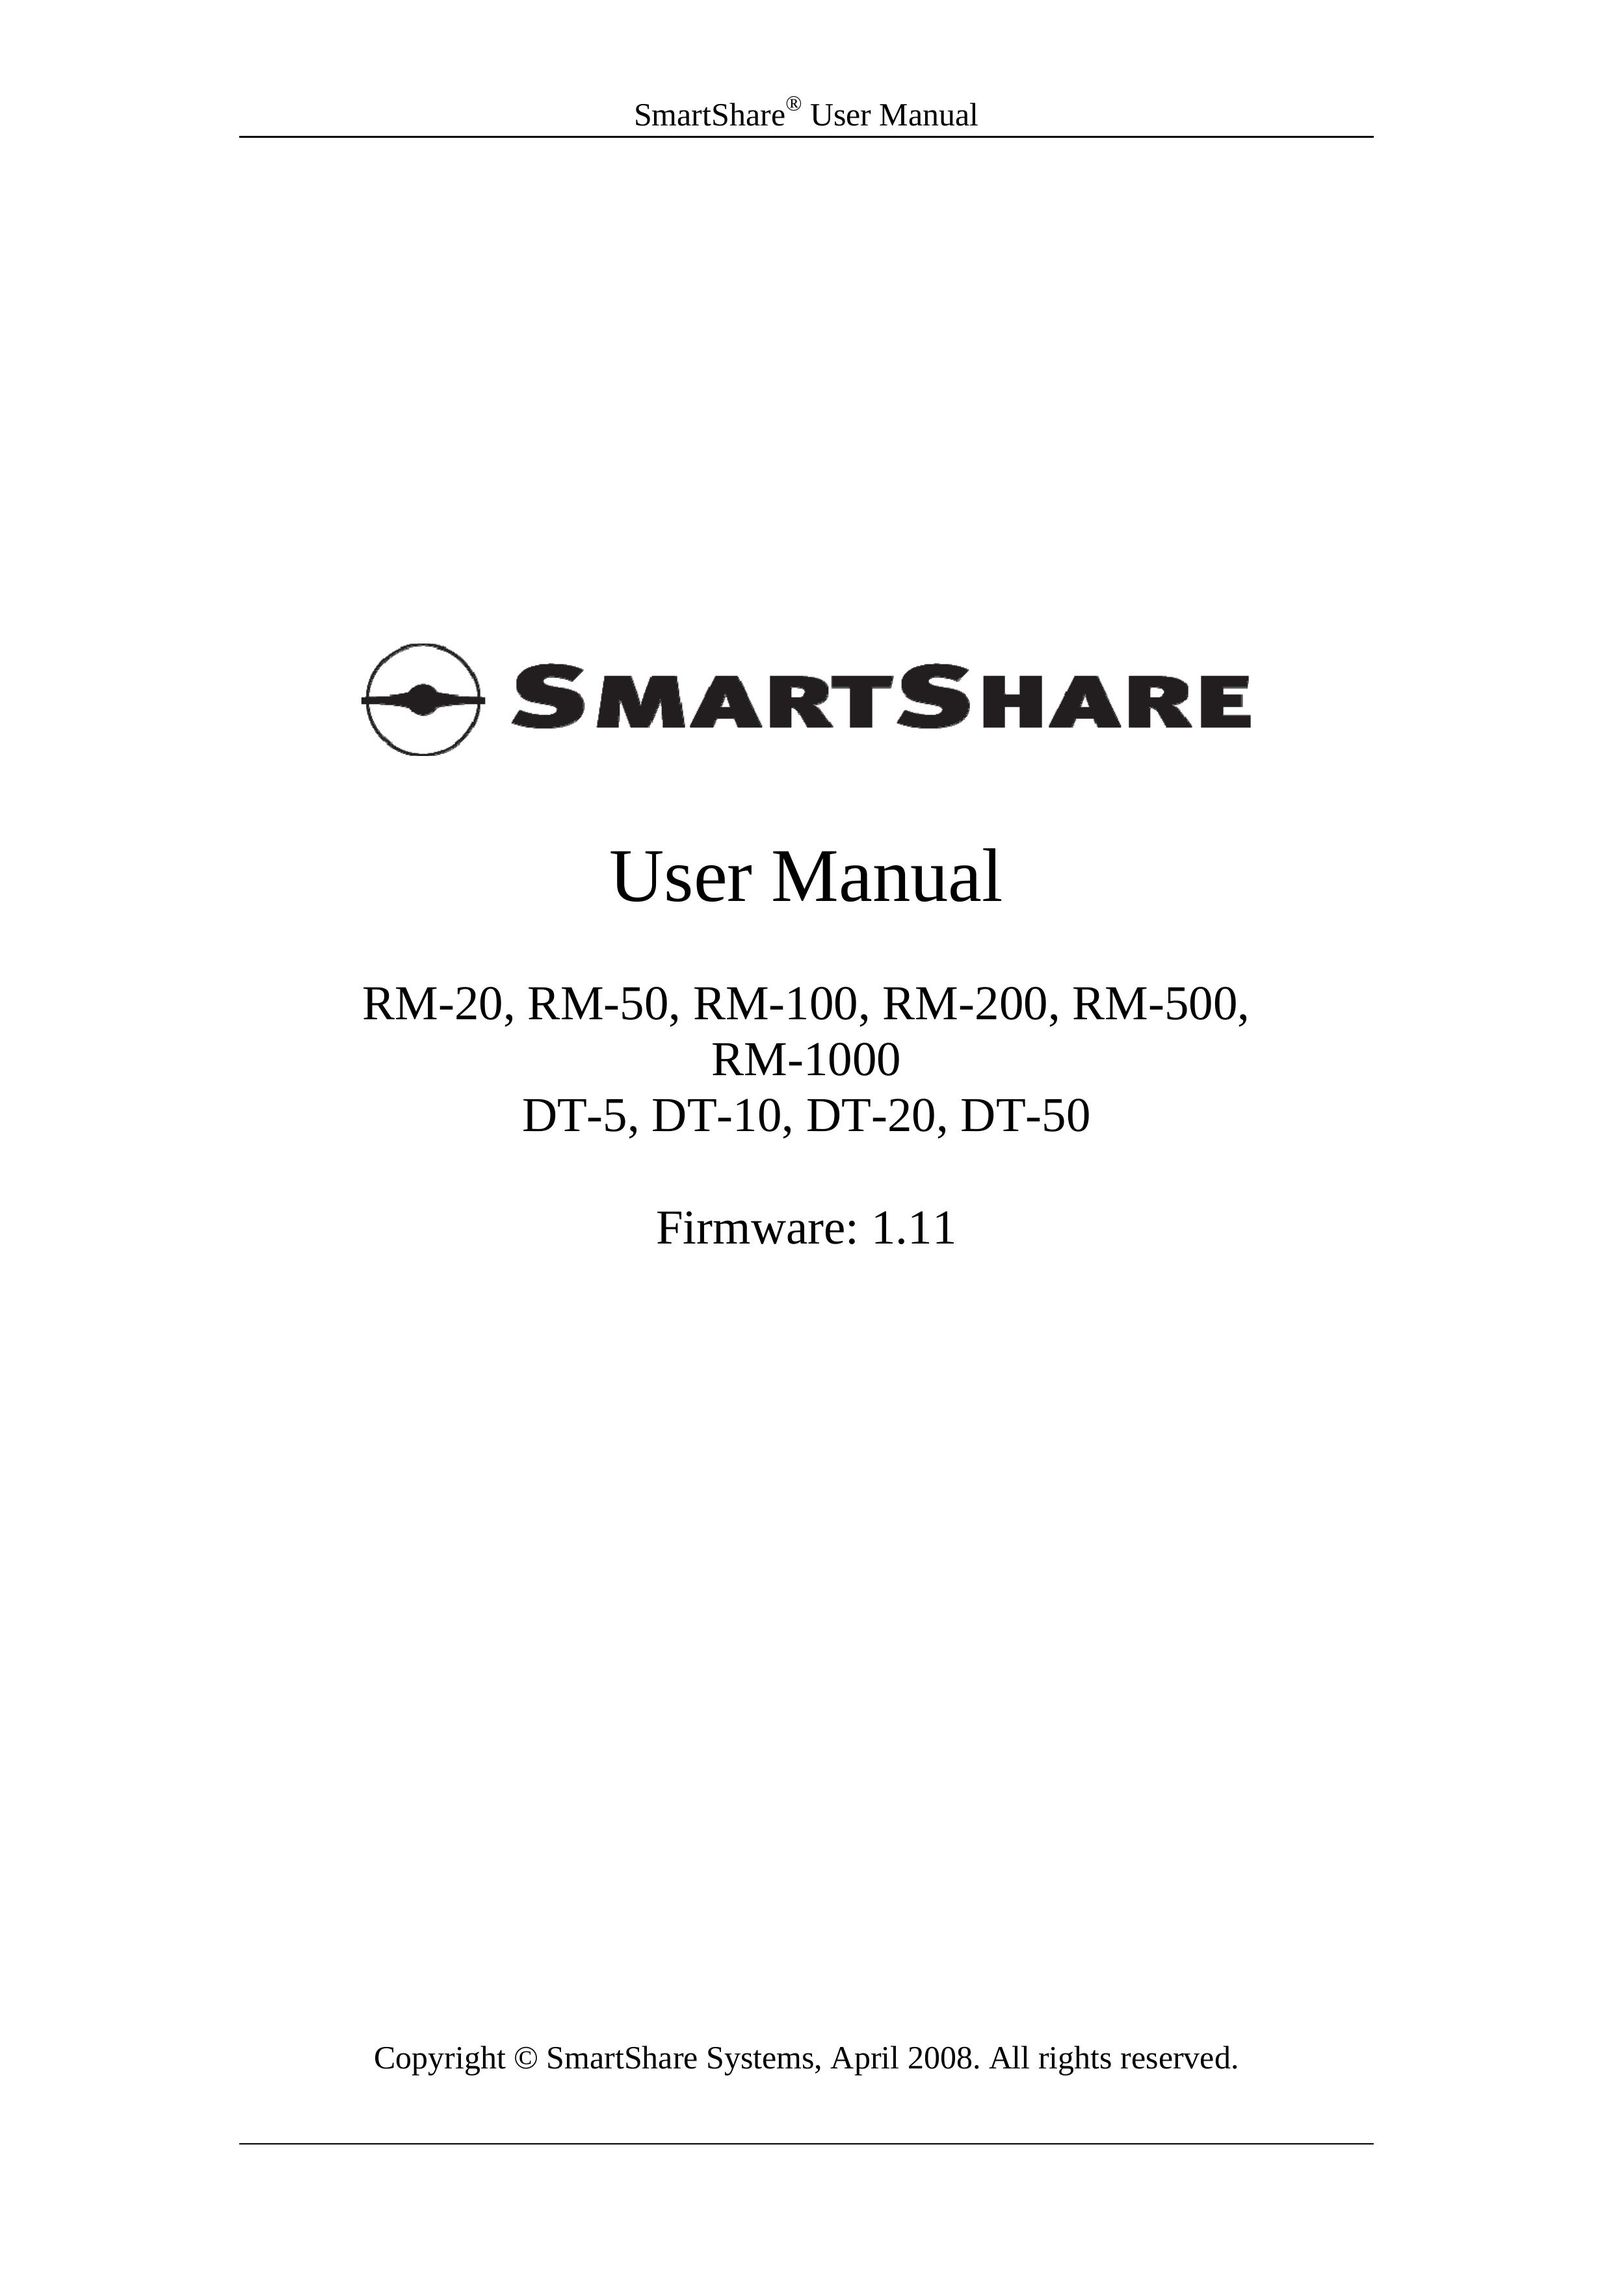 HP (Hewlett-Packard) DT-10 Network Router User Manual